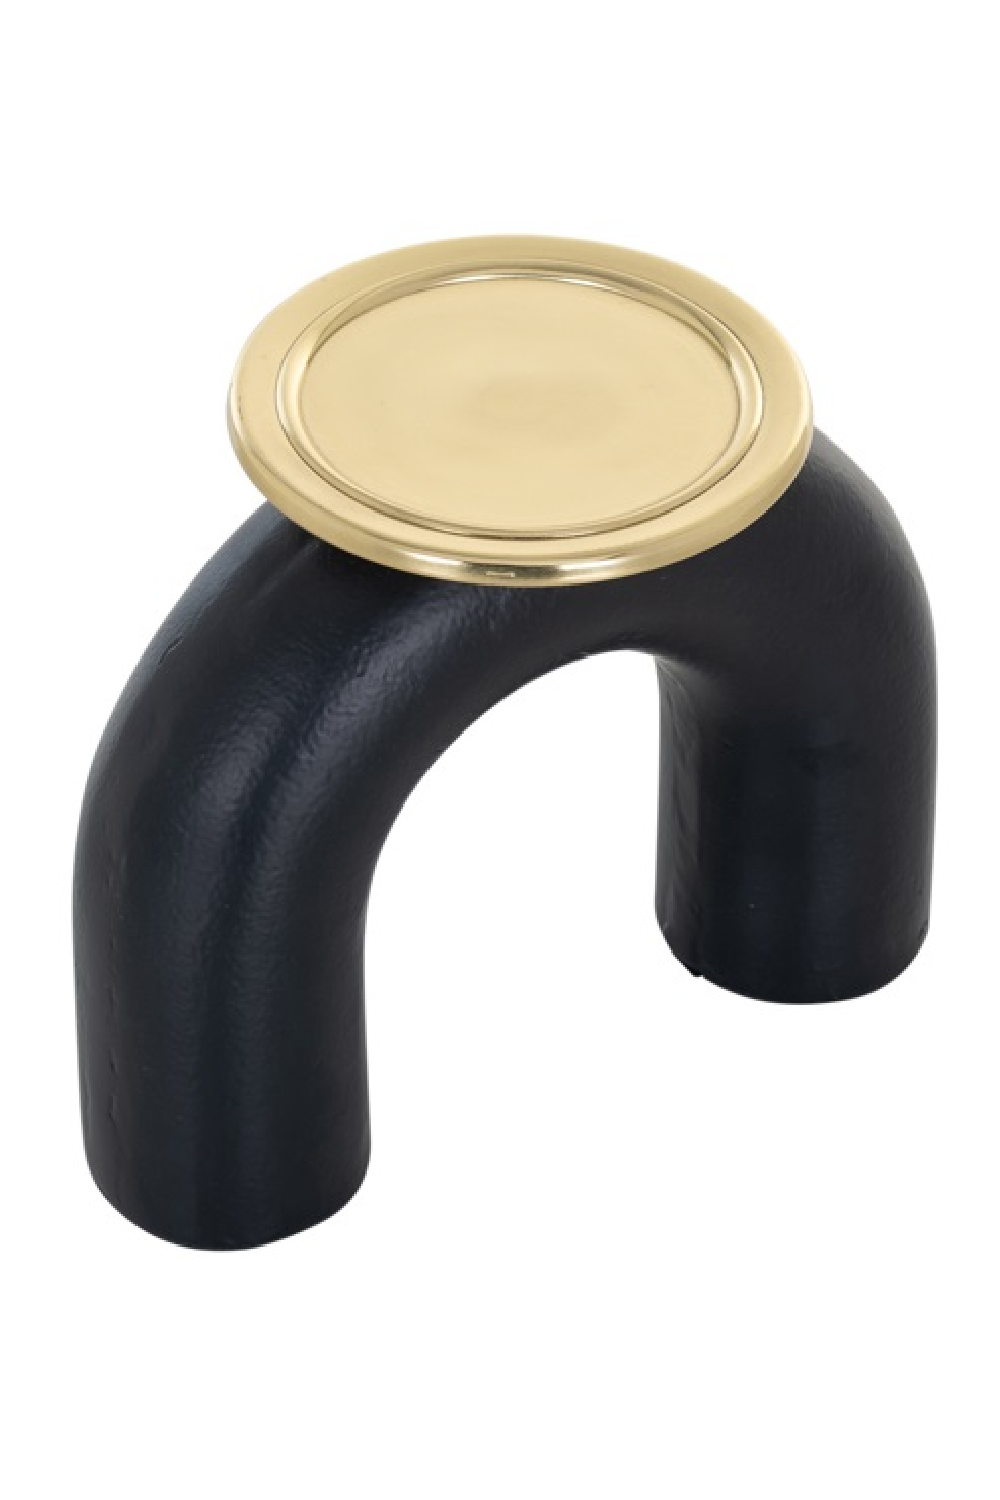 Black Arched Candle Holder L | OROA Femke | Oroa.com